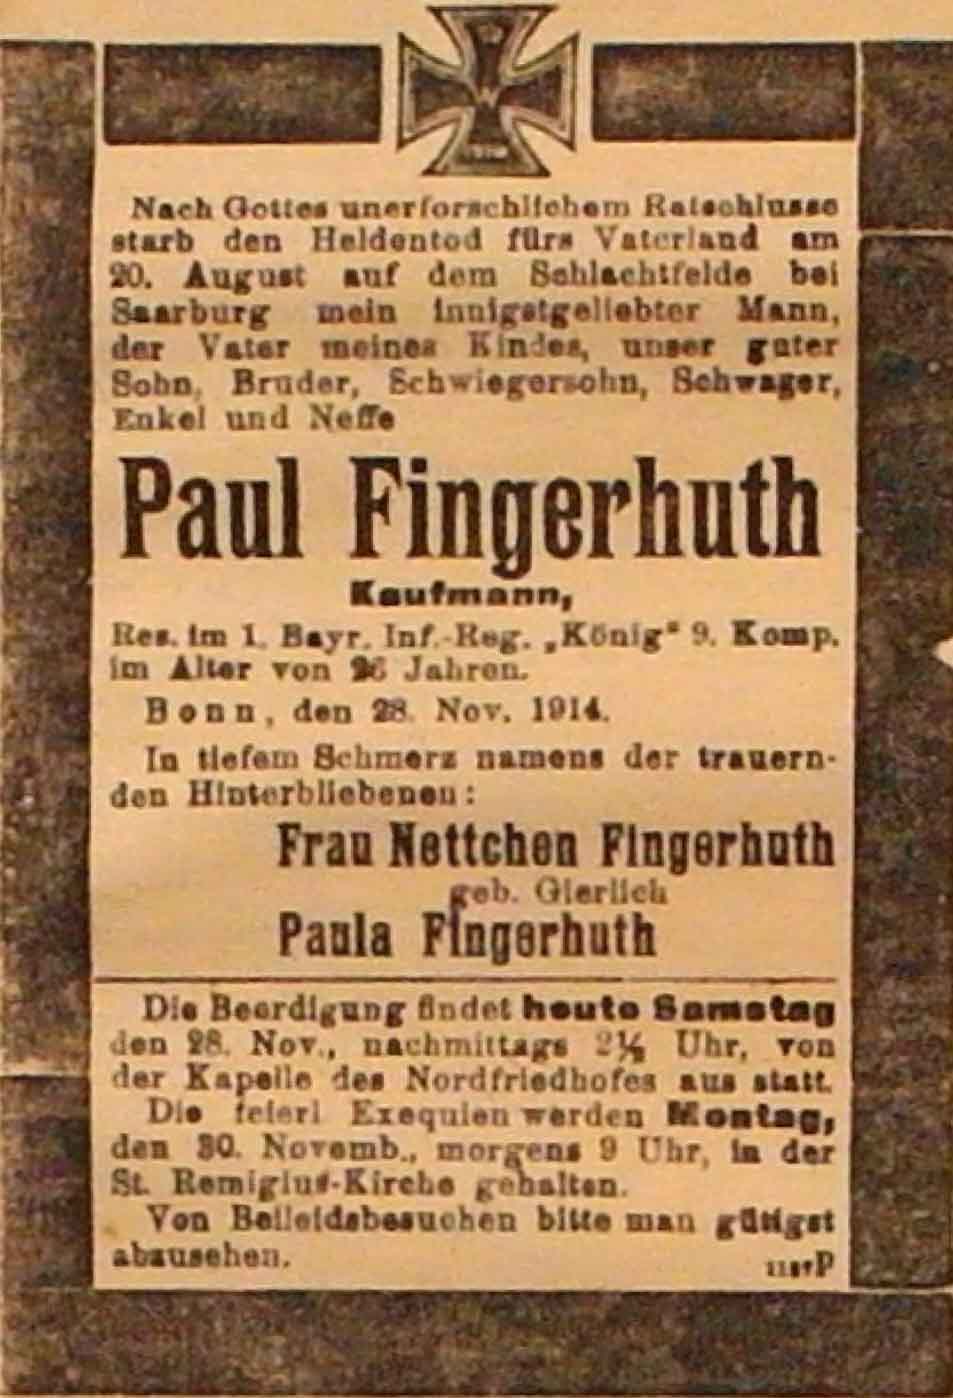 Anzeige in der Deutschen Reichs-Zeitung vom 28. November 1914